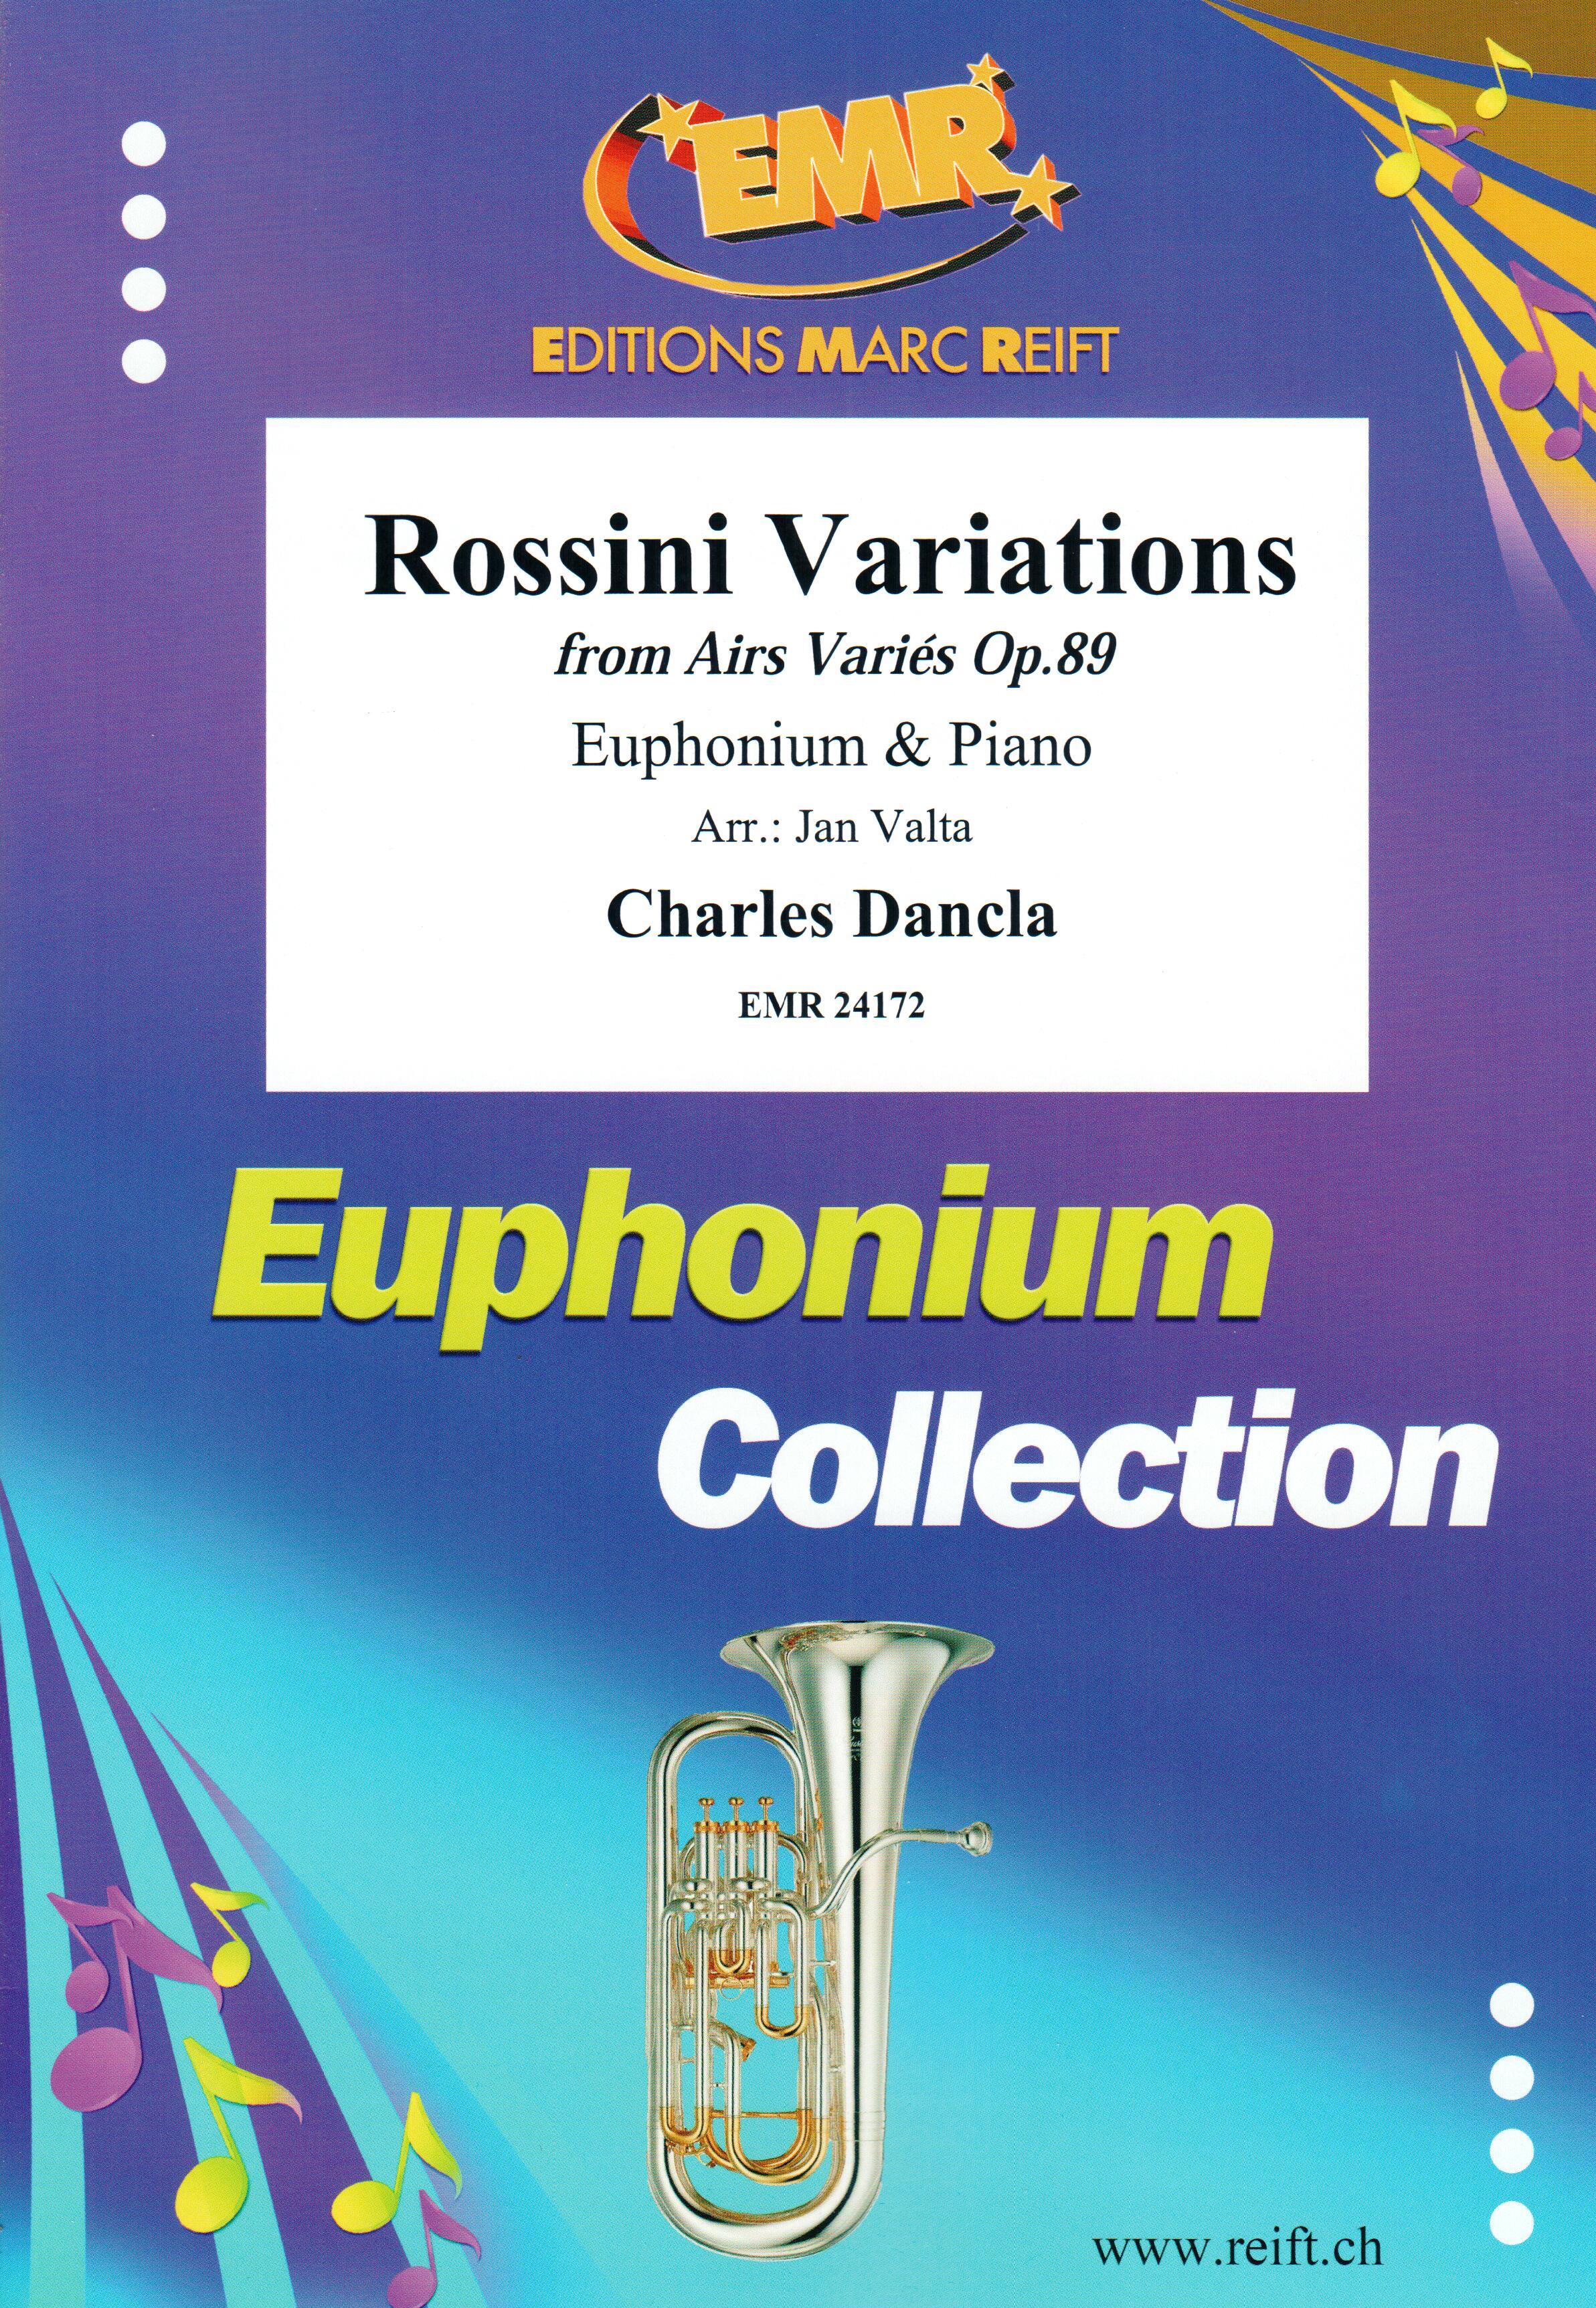 ROSSINI VARIATIONS, SOLOS - Euphonium